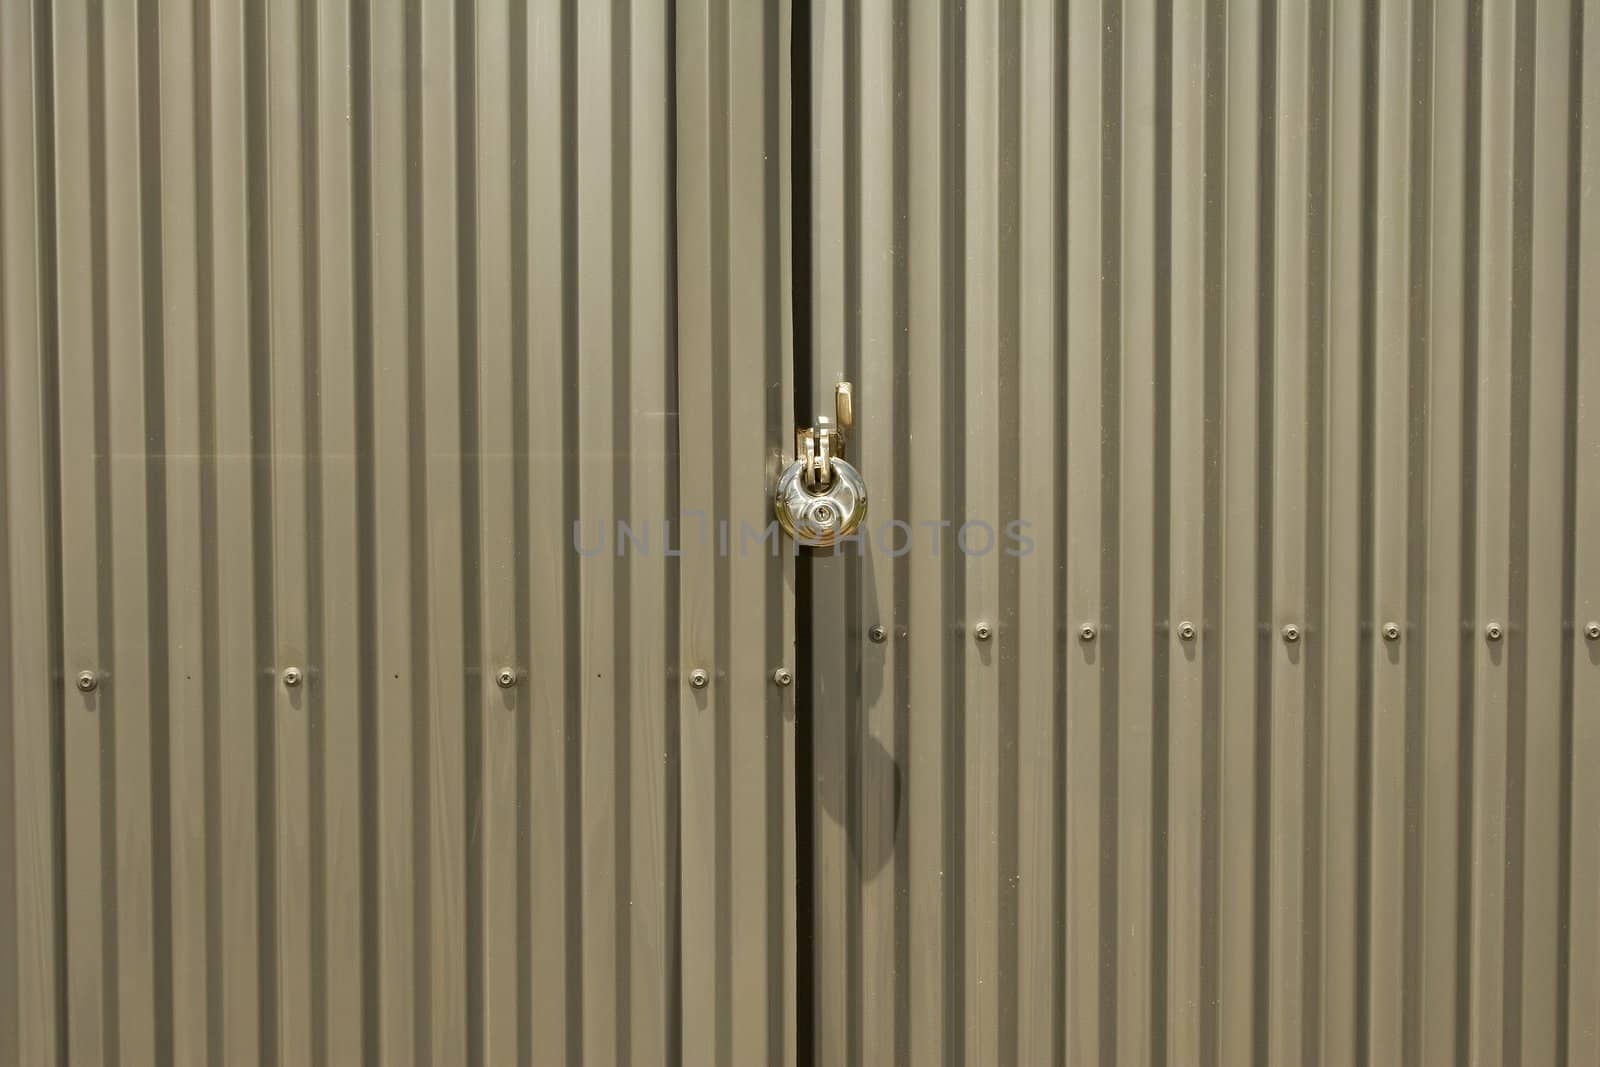 Locked doors with heavy padlock